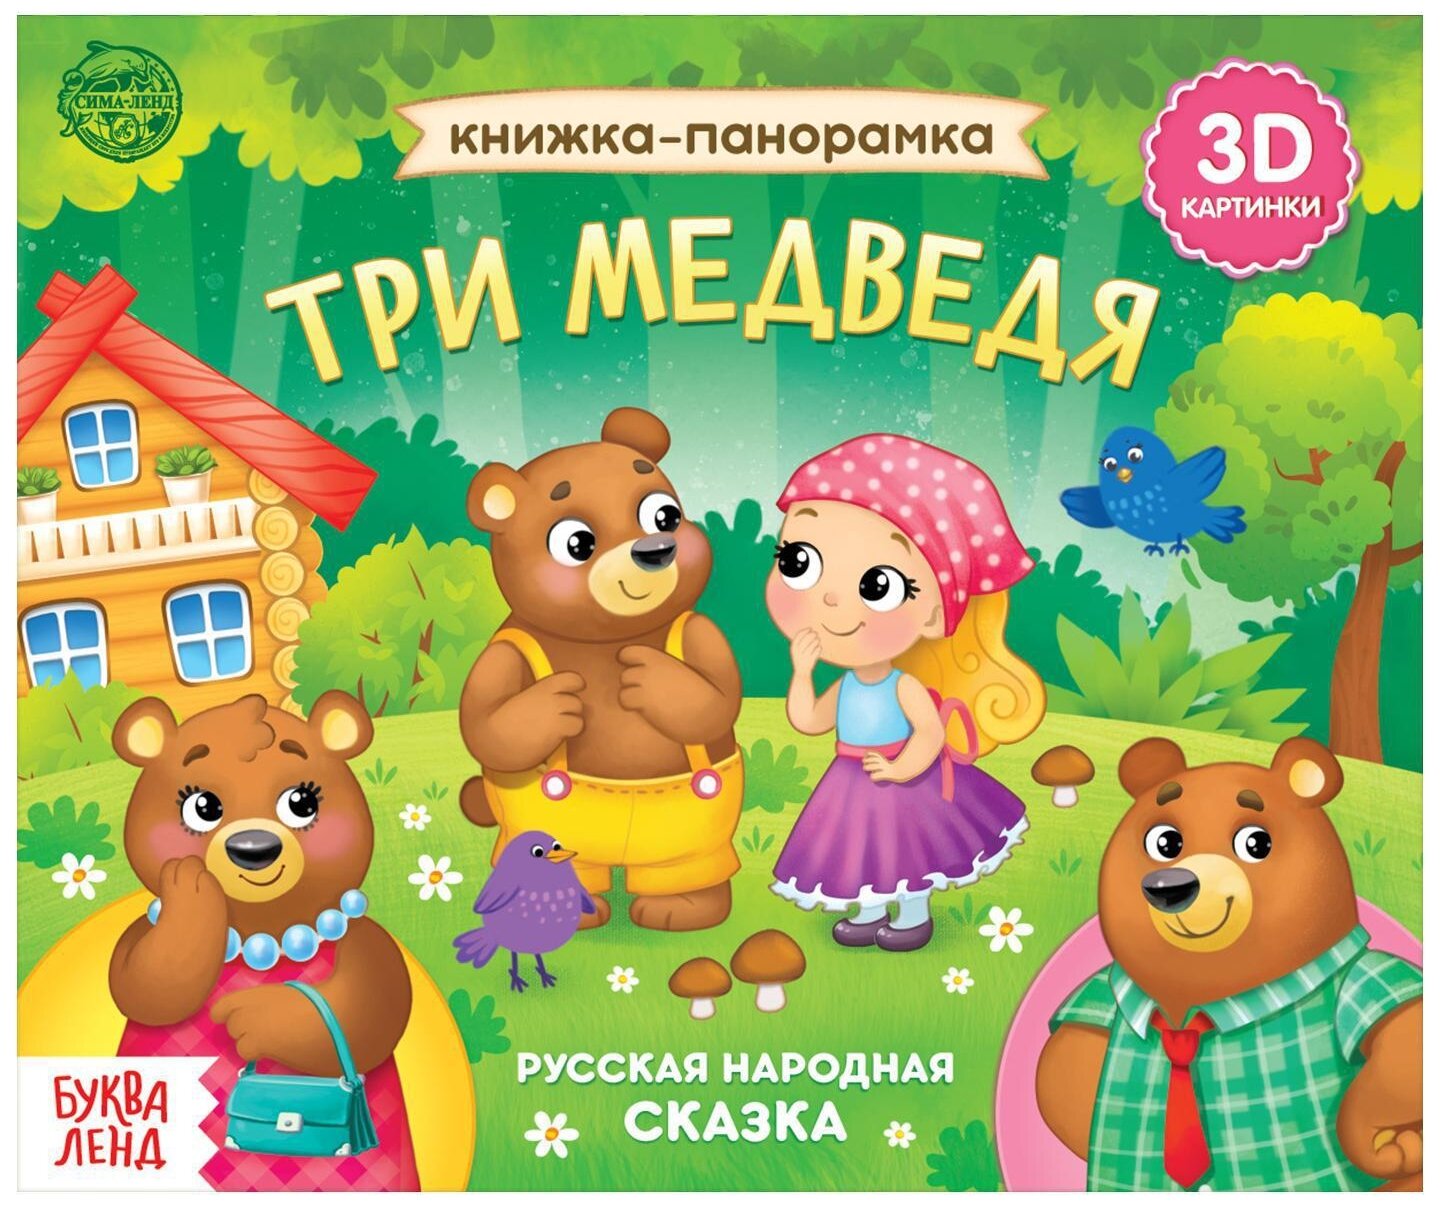 Развивающая книжка-панорамка 3D"Три медведя", 12 стр, для детей